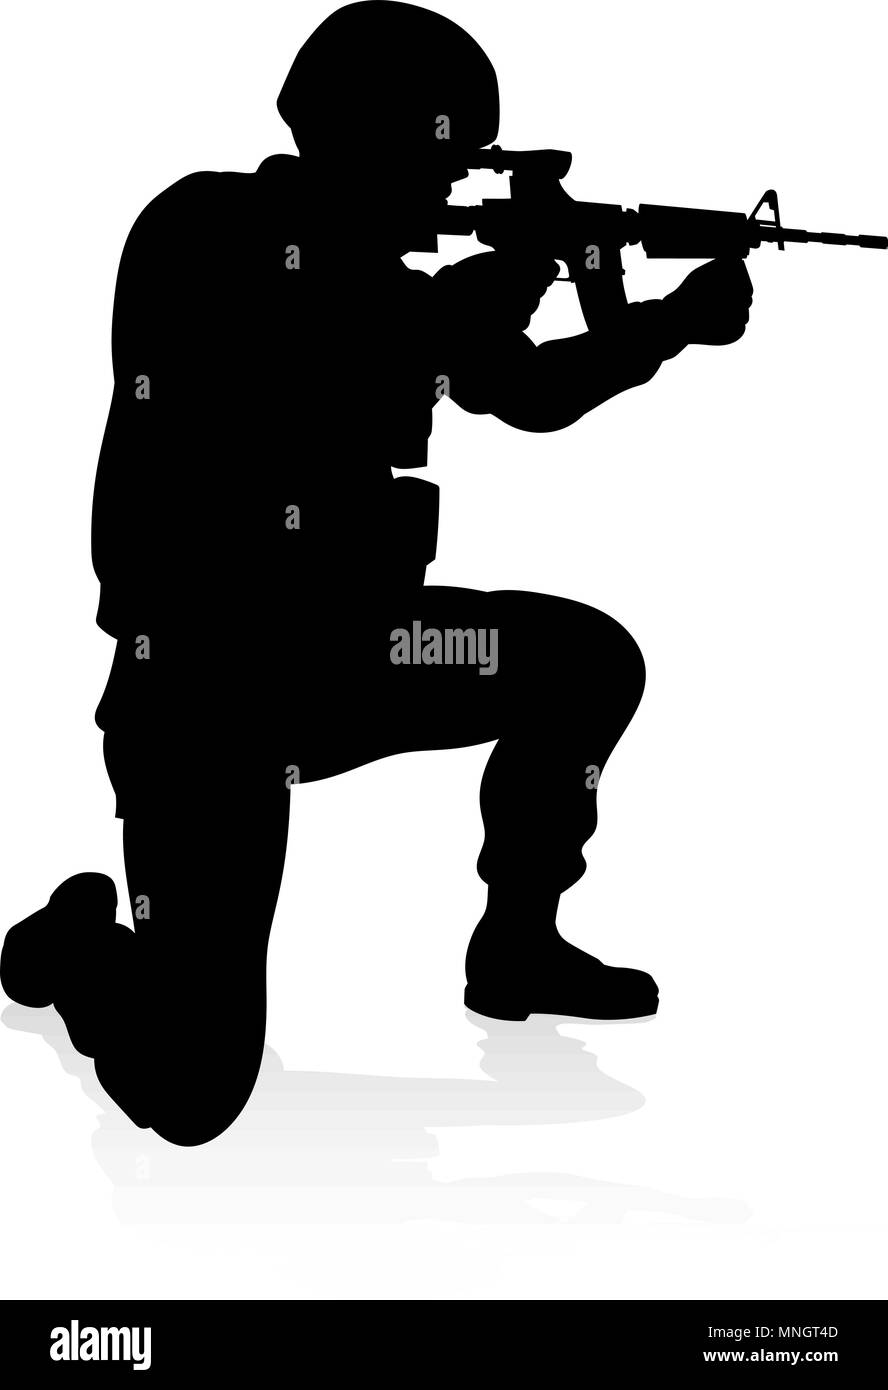 Soldado Militar silueta detallada Ilustración del Vector